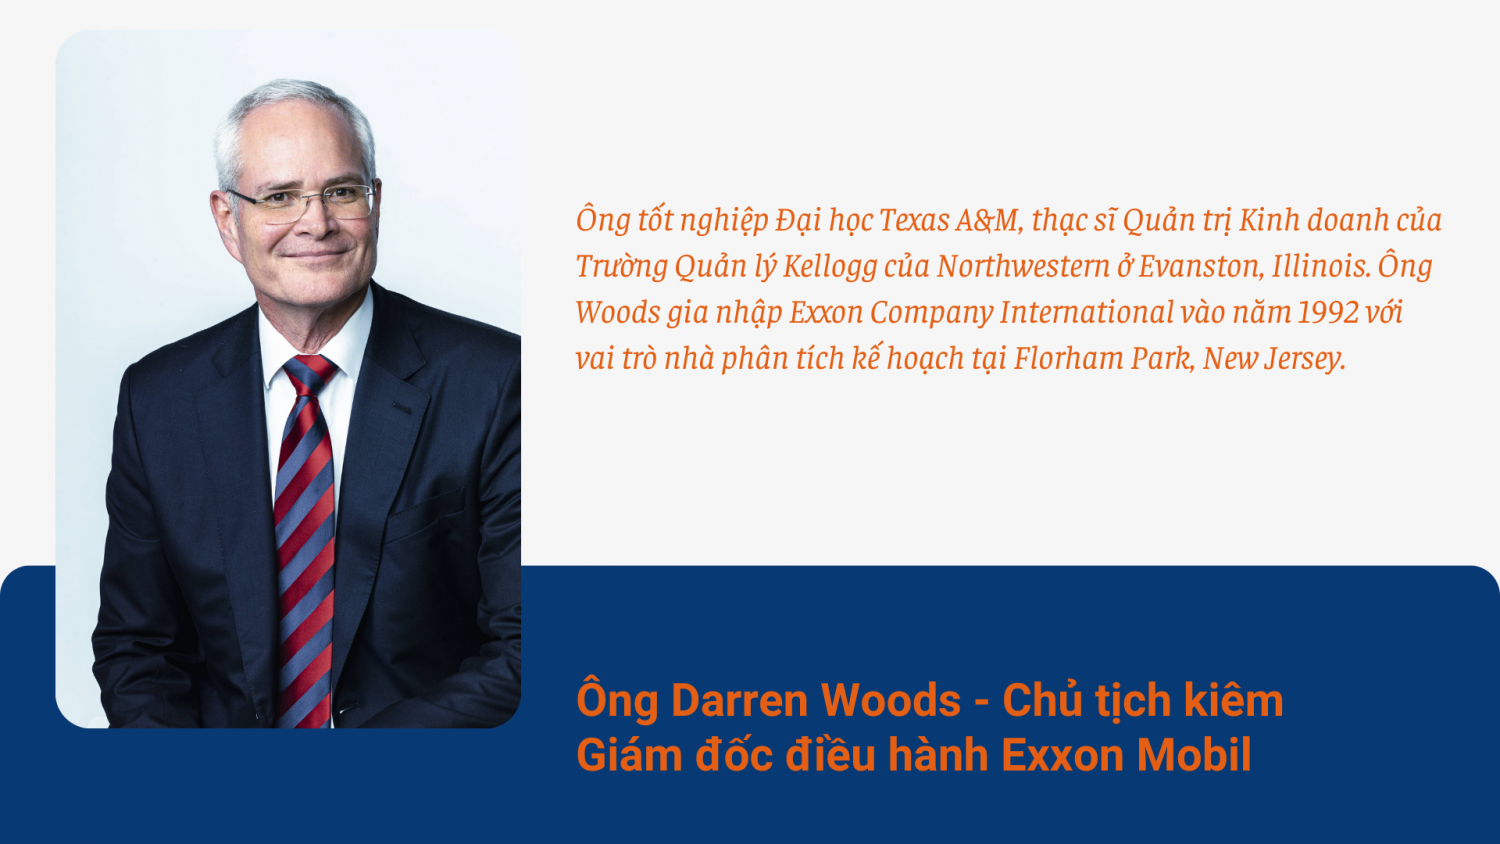 Exxon Mobil – Biểu tượng công nghiệp dầu khí của Hoa Kỳ